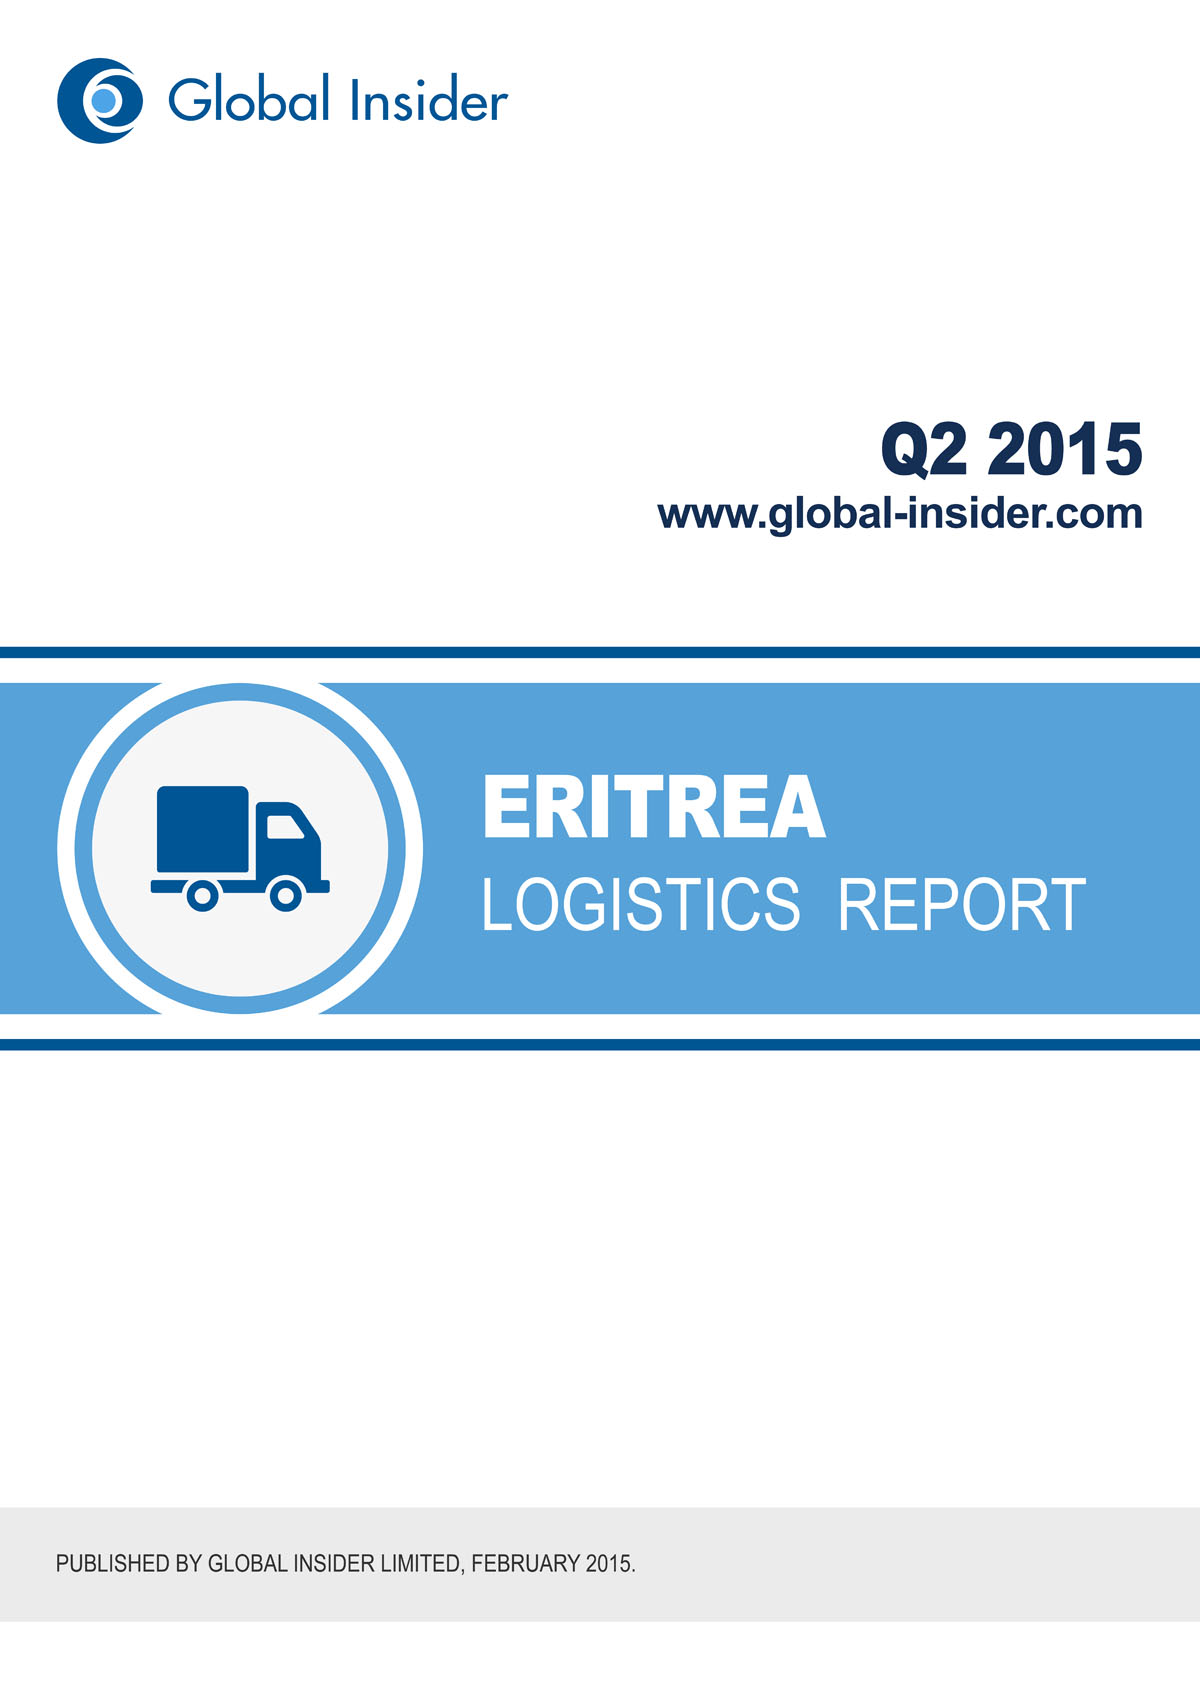 Eritrea Logistics Report